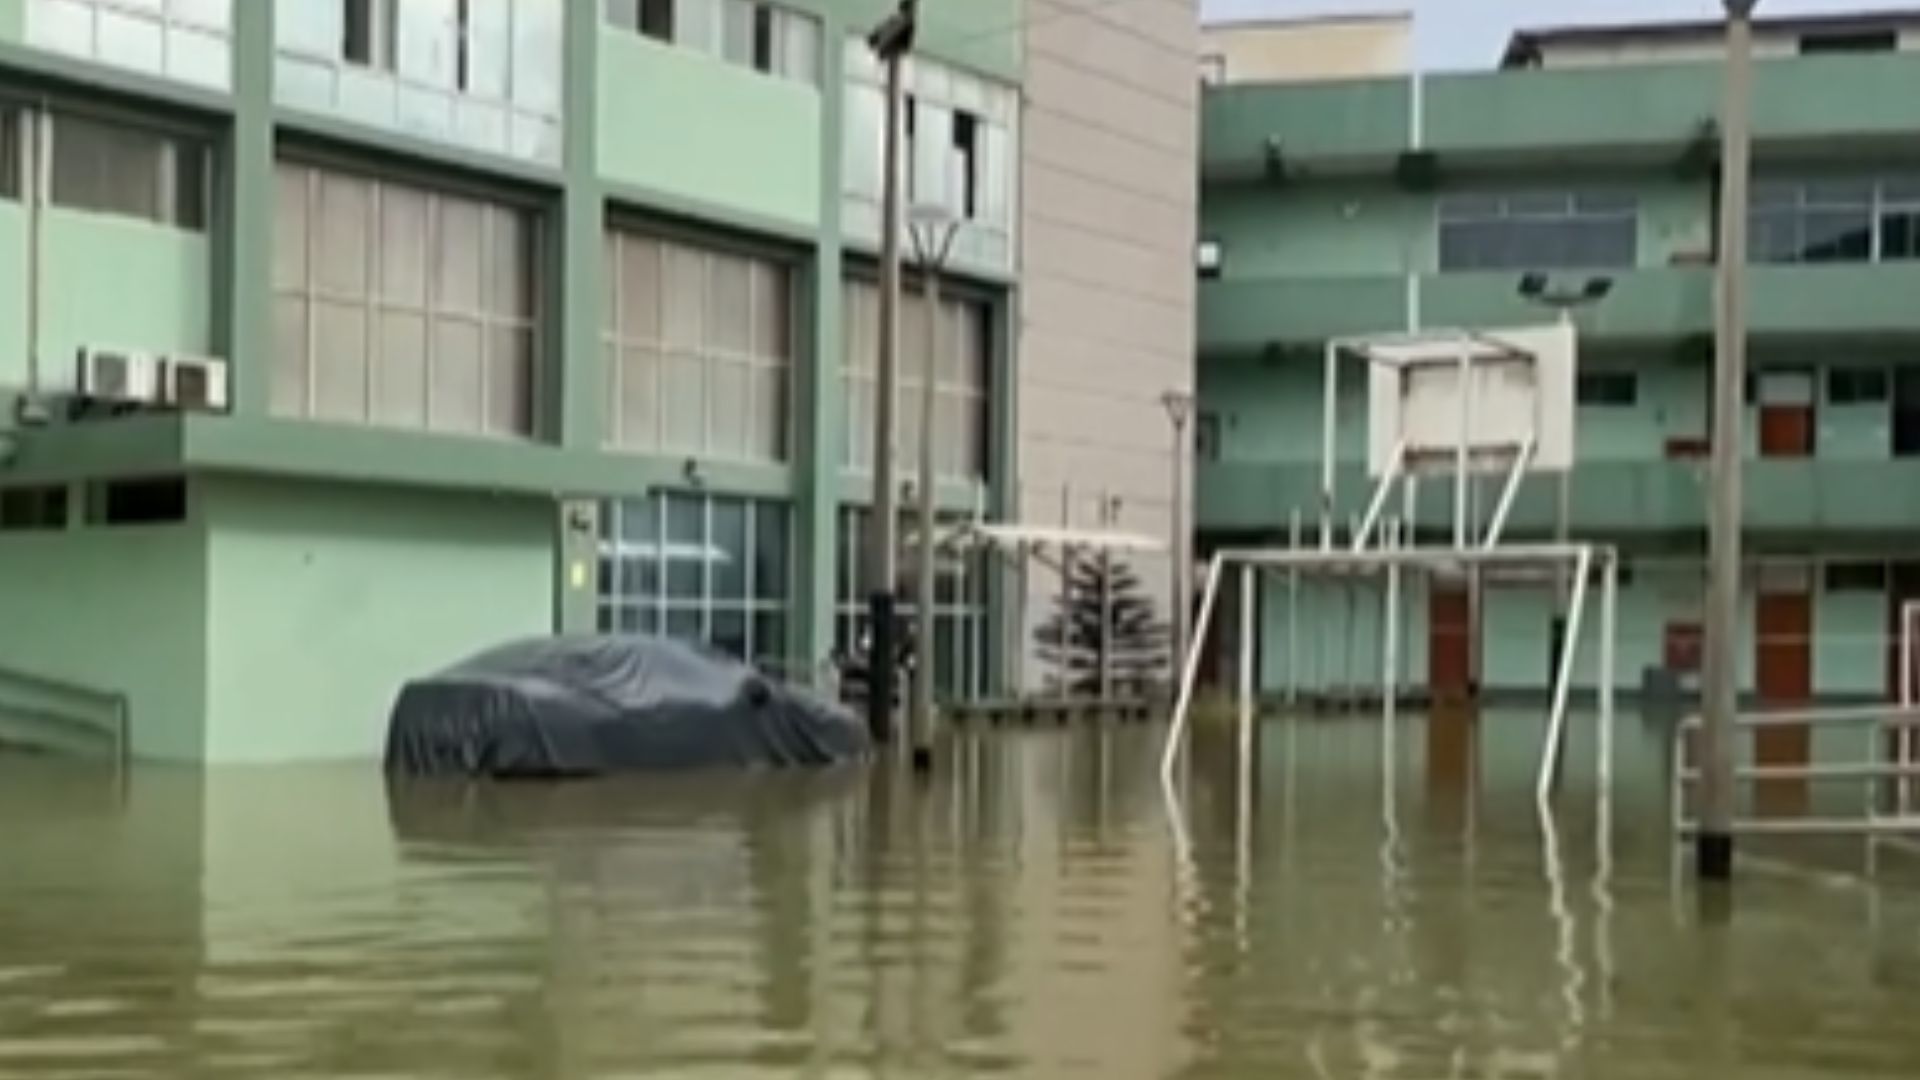 Lluvias ocasionadas por el ciclón Yaku dejan inundada una comisaría en Chiclayo. (Canal N)